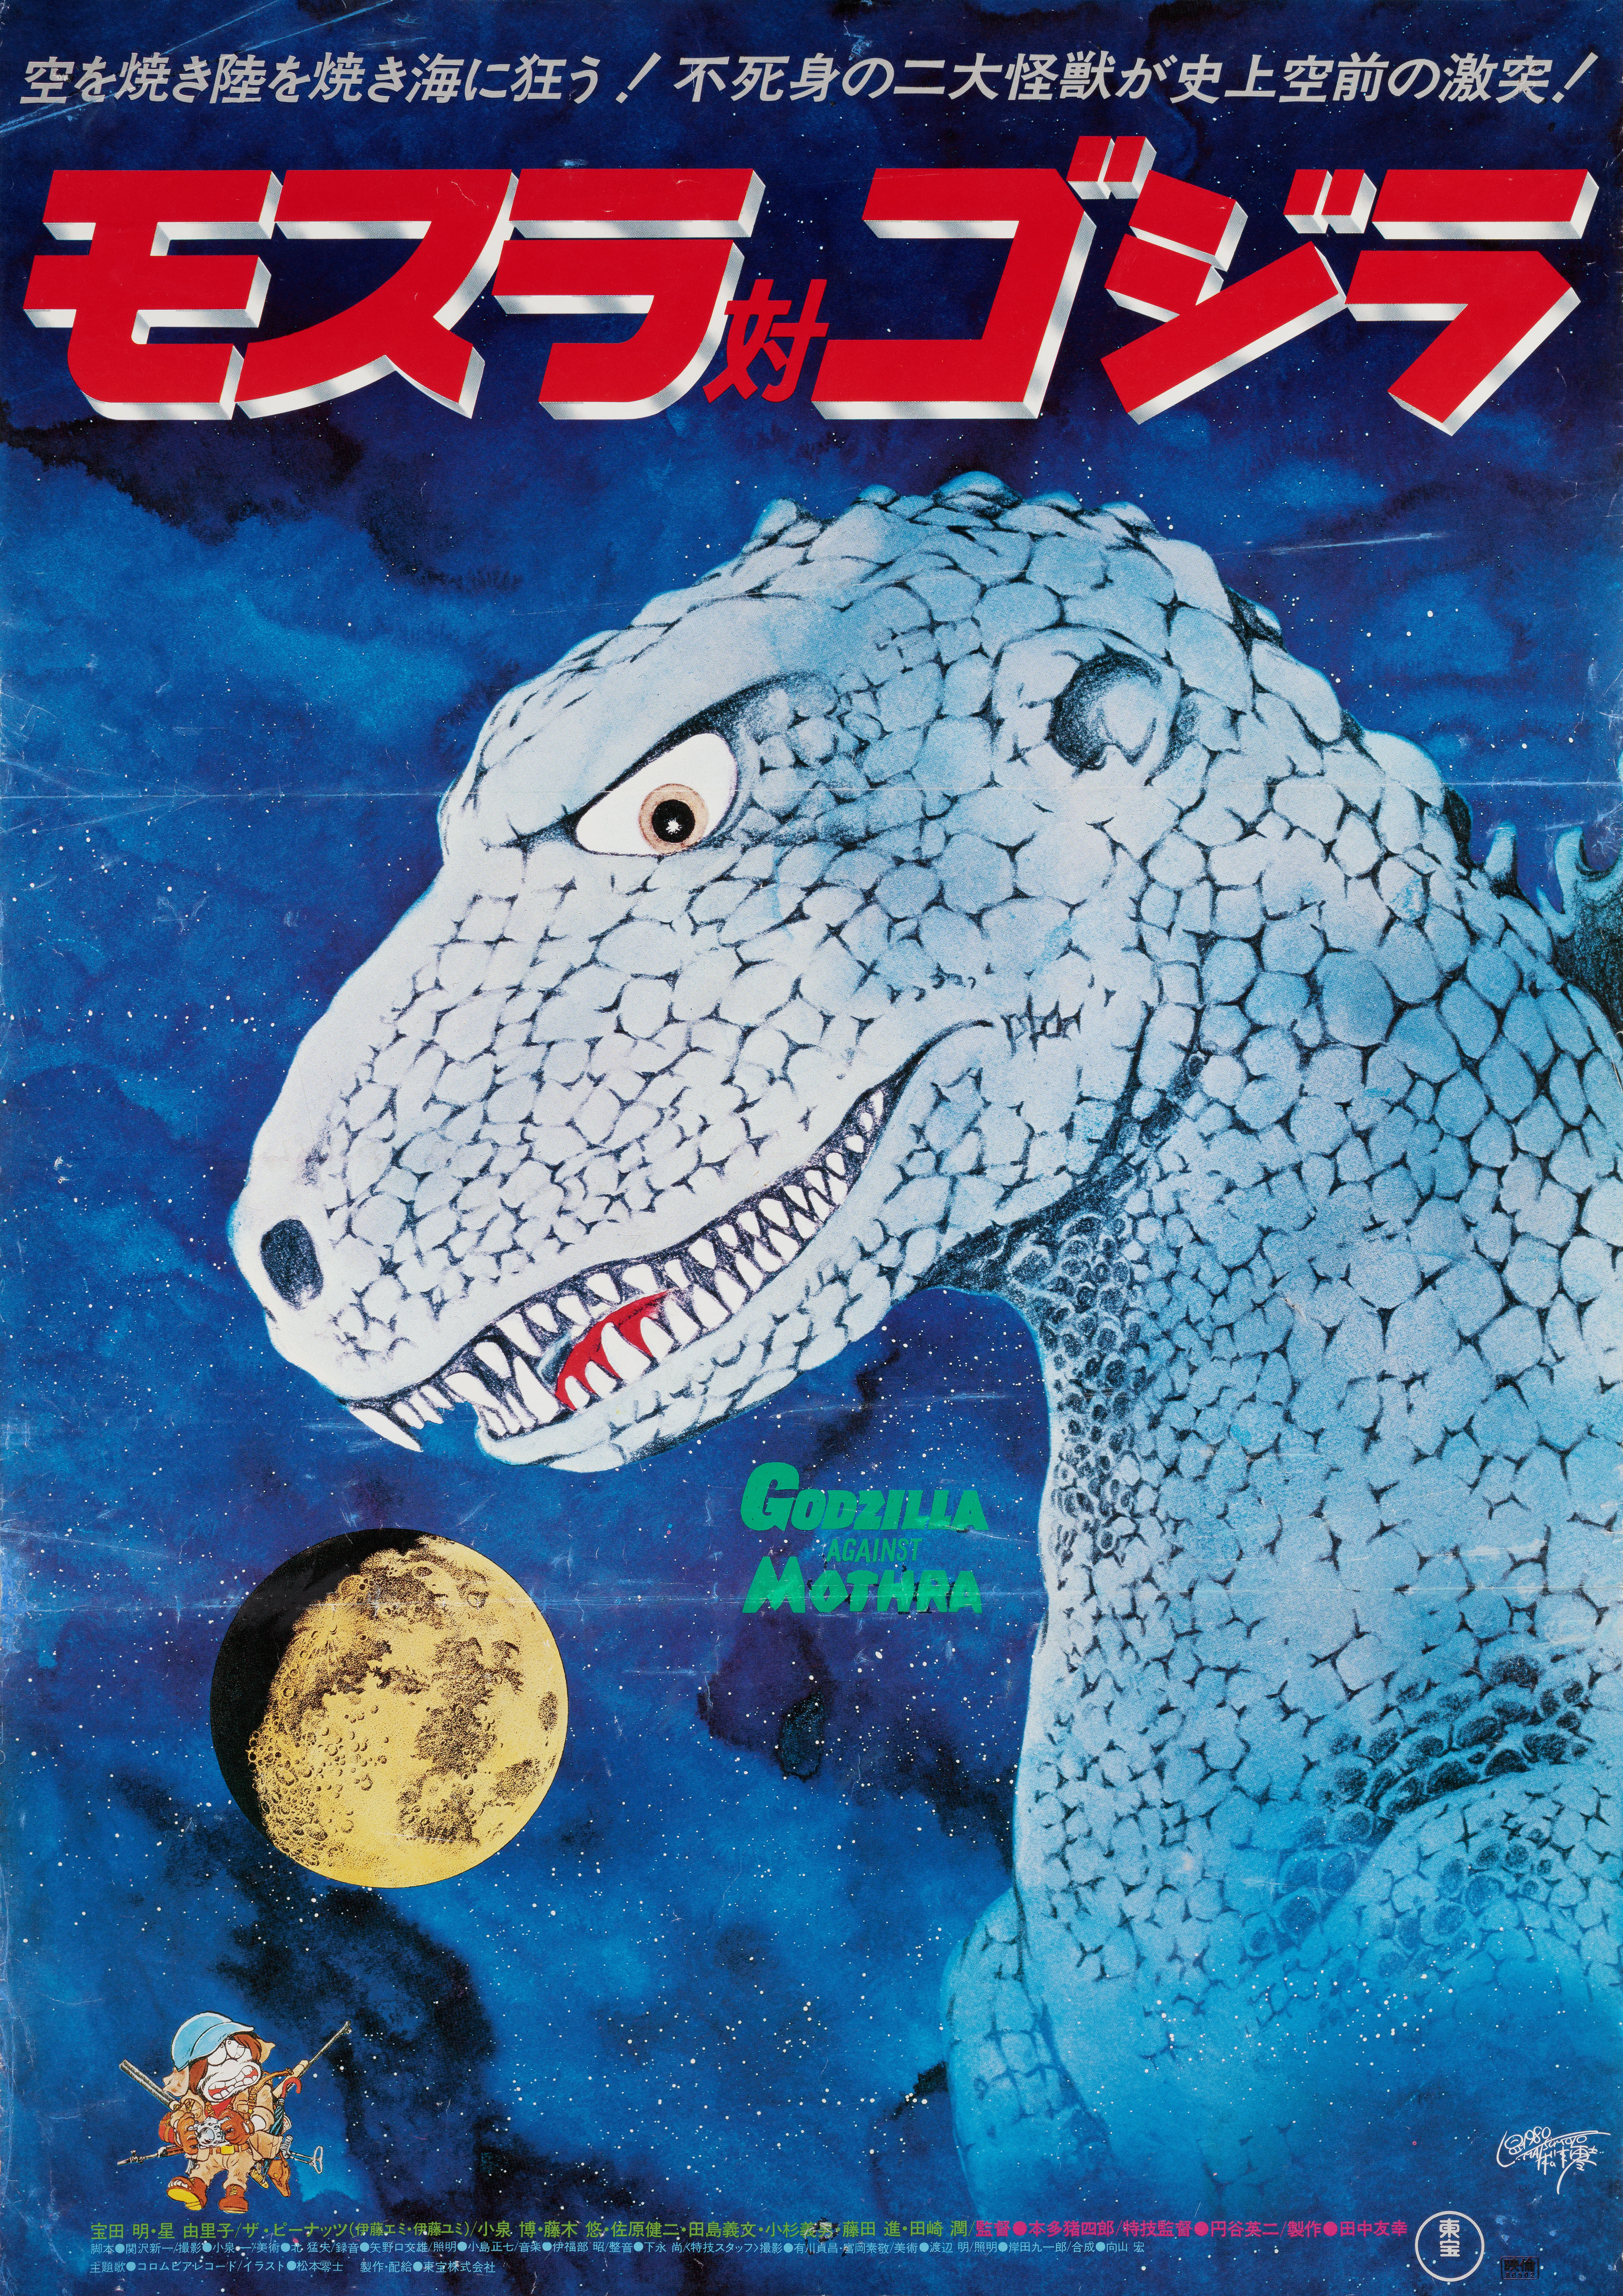 Годзилла против Мотры (Mothra vs. Godzilla, 1964), режиссёр Иширо Хонда, японский постер к фильму, автор Мацумото (монстры, 1980 год)